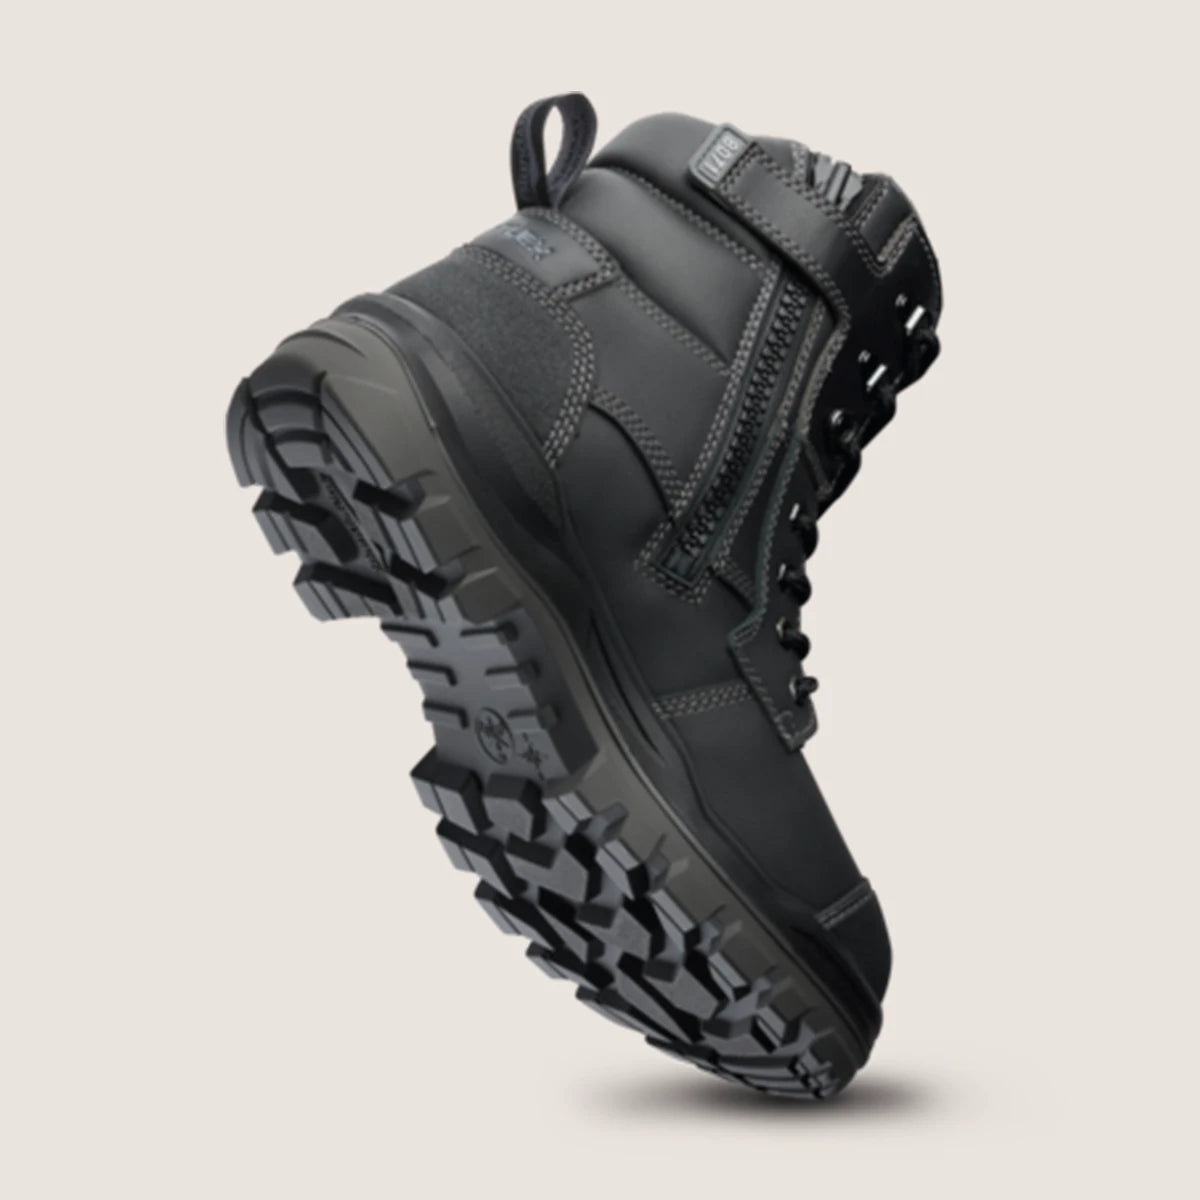 Blundstone 8071 Unisex RotoFlex Safety Boots - Black